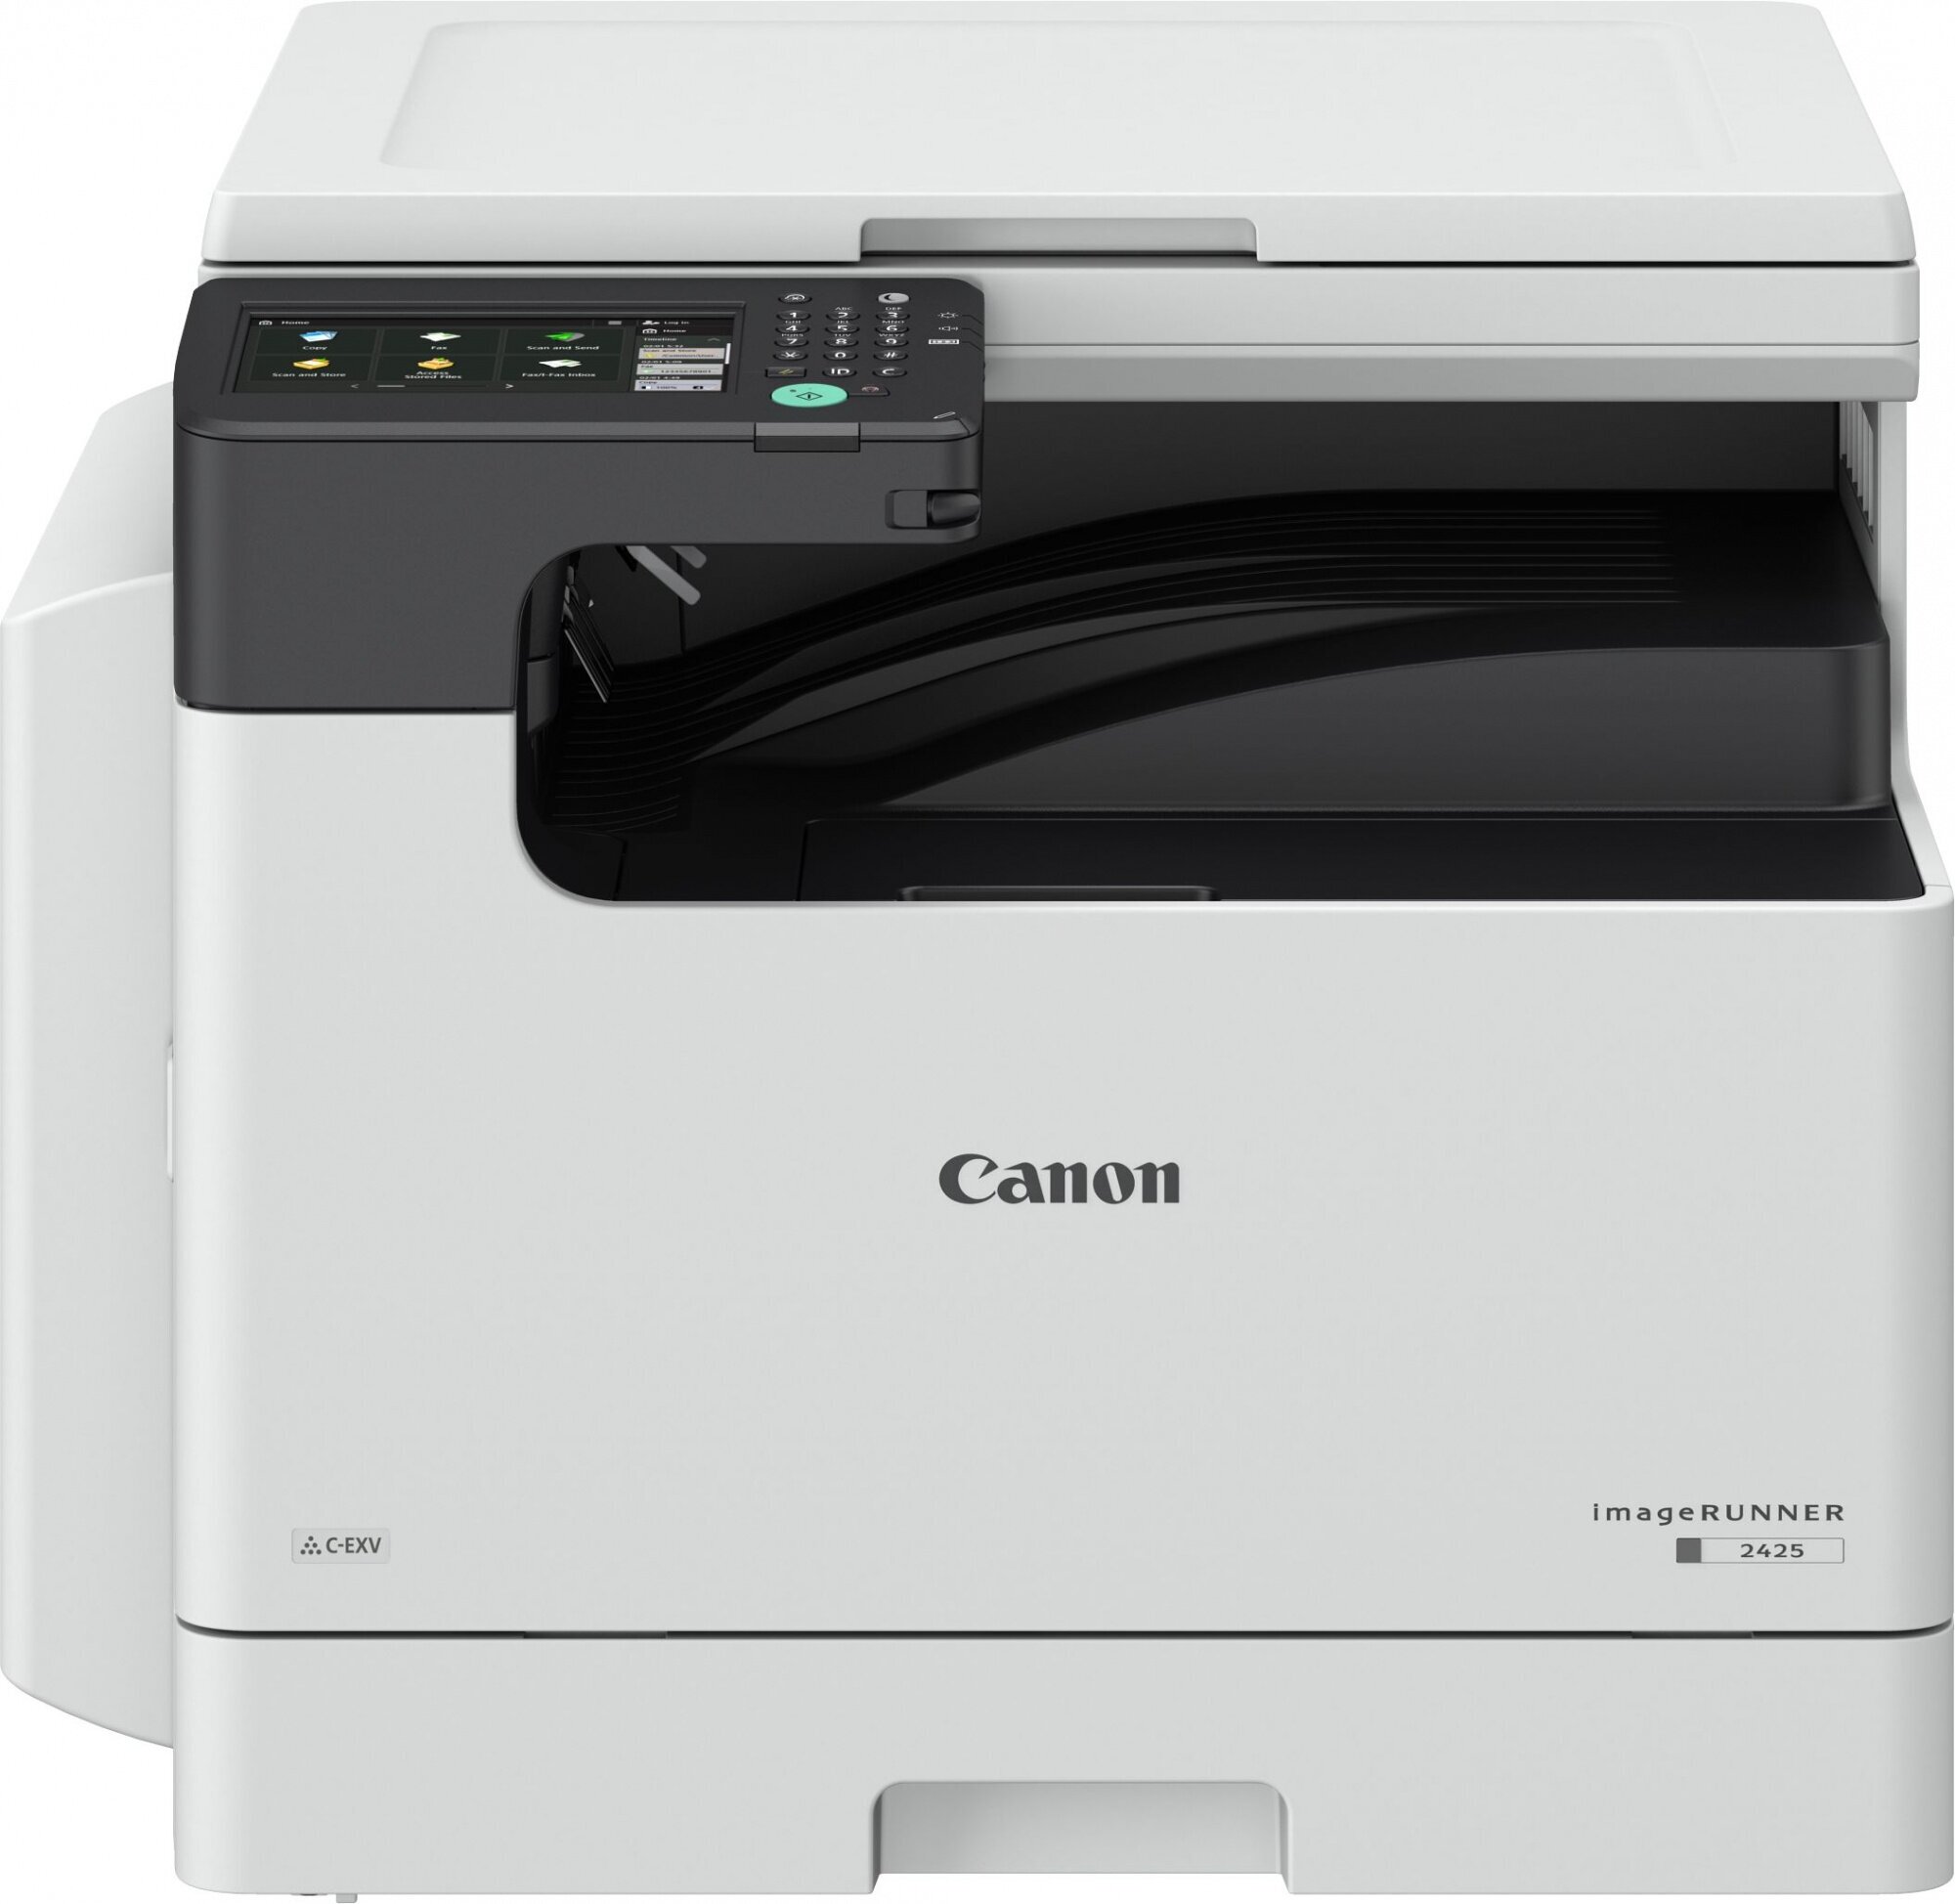 Копир Canon imageRUNNER 2425i (4293C004) лазерный печать: черно-белый DADF